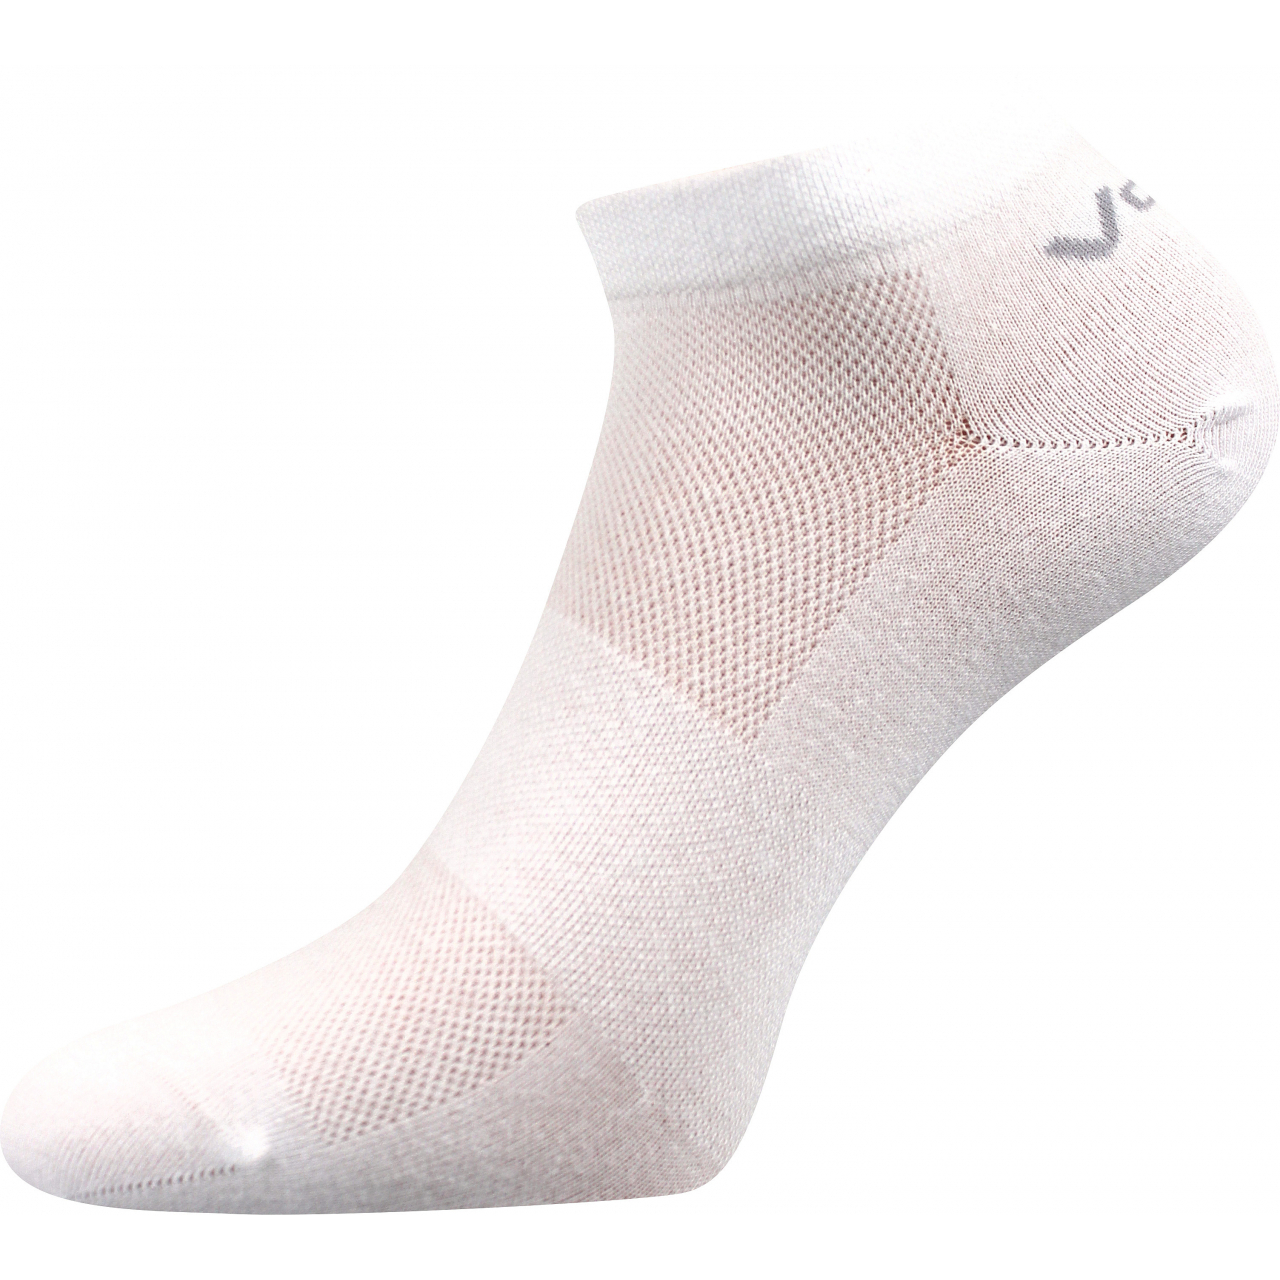 Ponožky unisex klasické Voxx Metys - bílé, 39-42